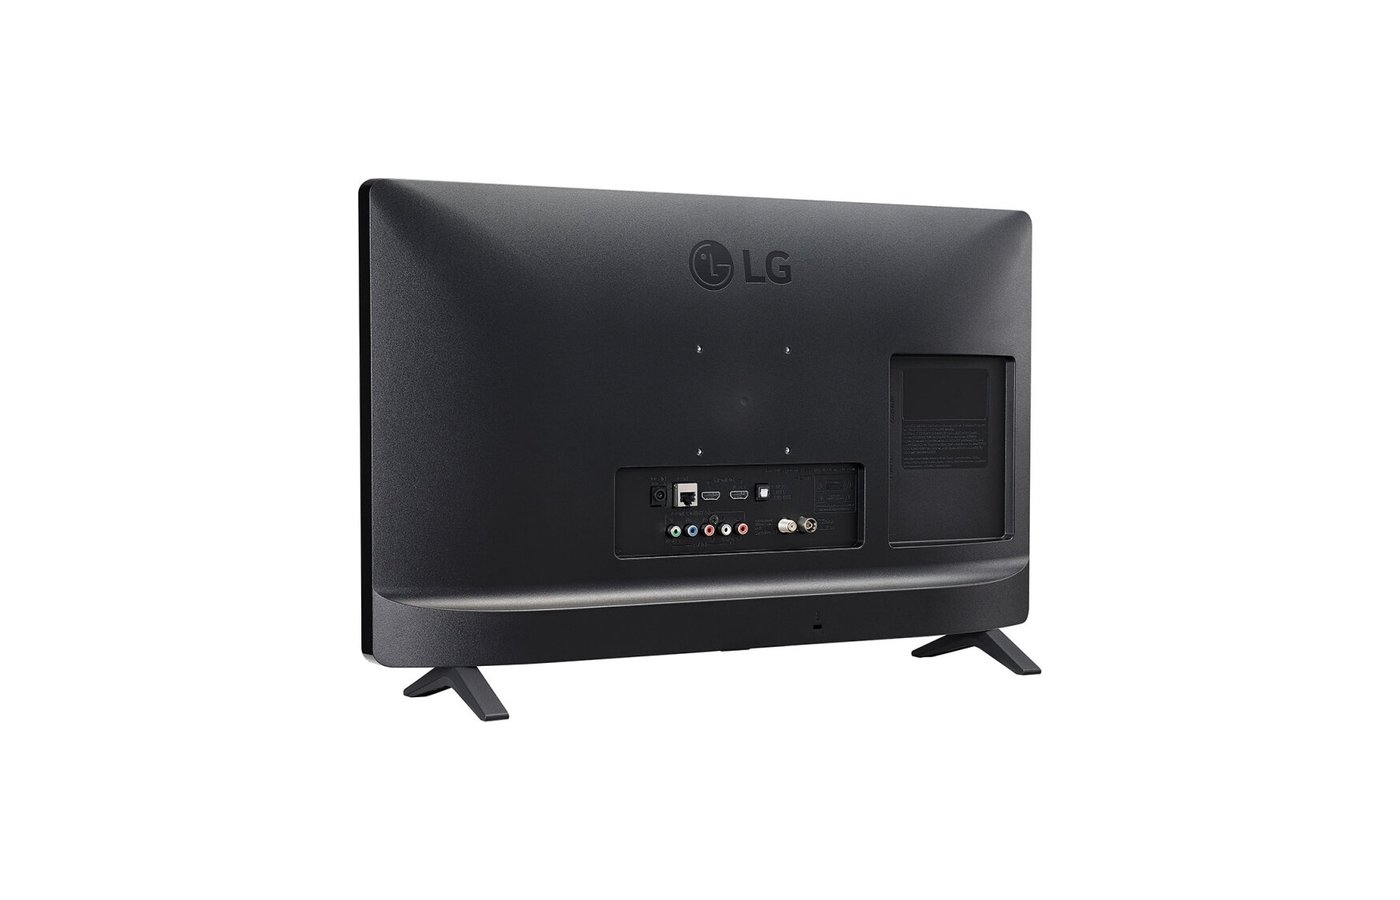 Телевизор lg 24tq520s. LG 24tn520s-PZ. Телевизор 24" LG 24tn520s-PZ. LG 24tn520s-PZ Smart TV. LG 28tq525s-PZ.